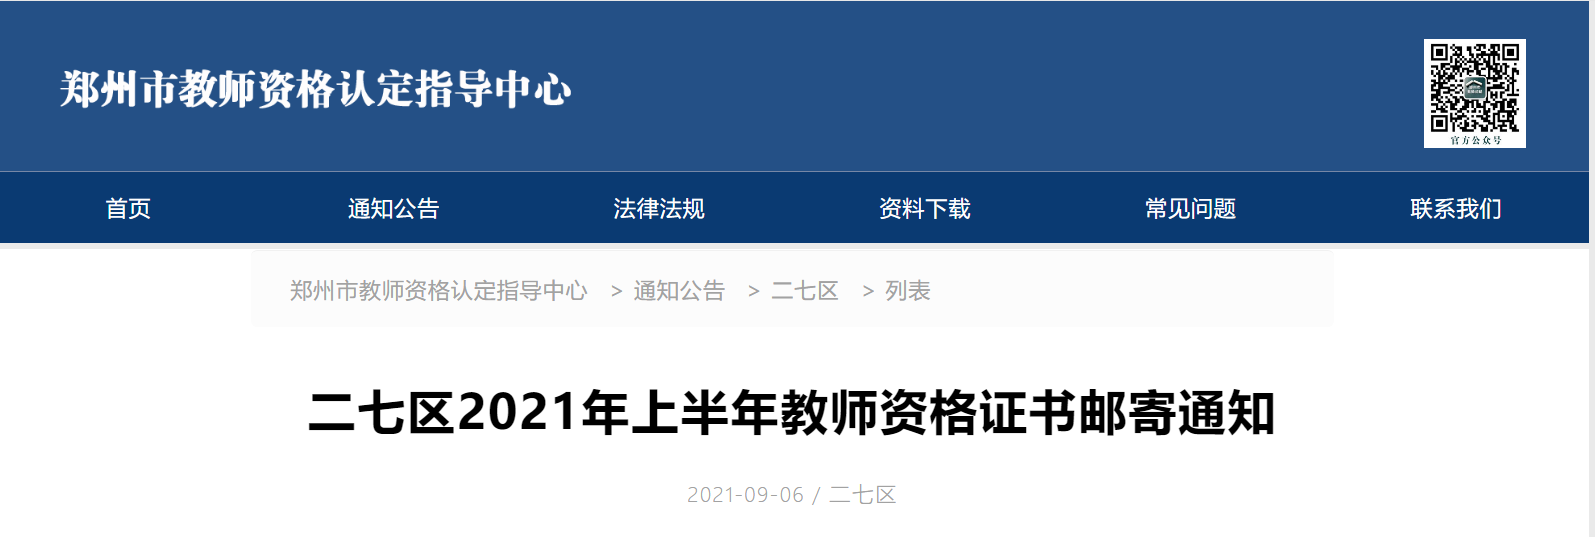 2021上半年河南郑州二七区教师资格证书邮寄通知